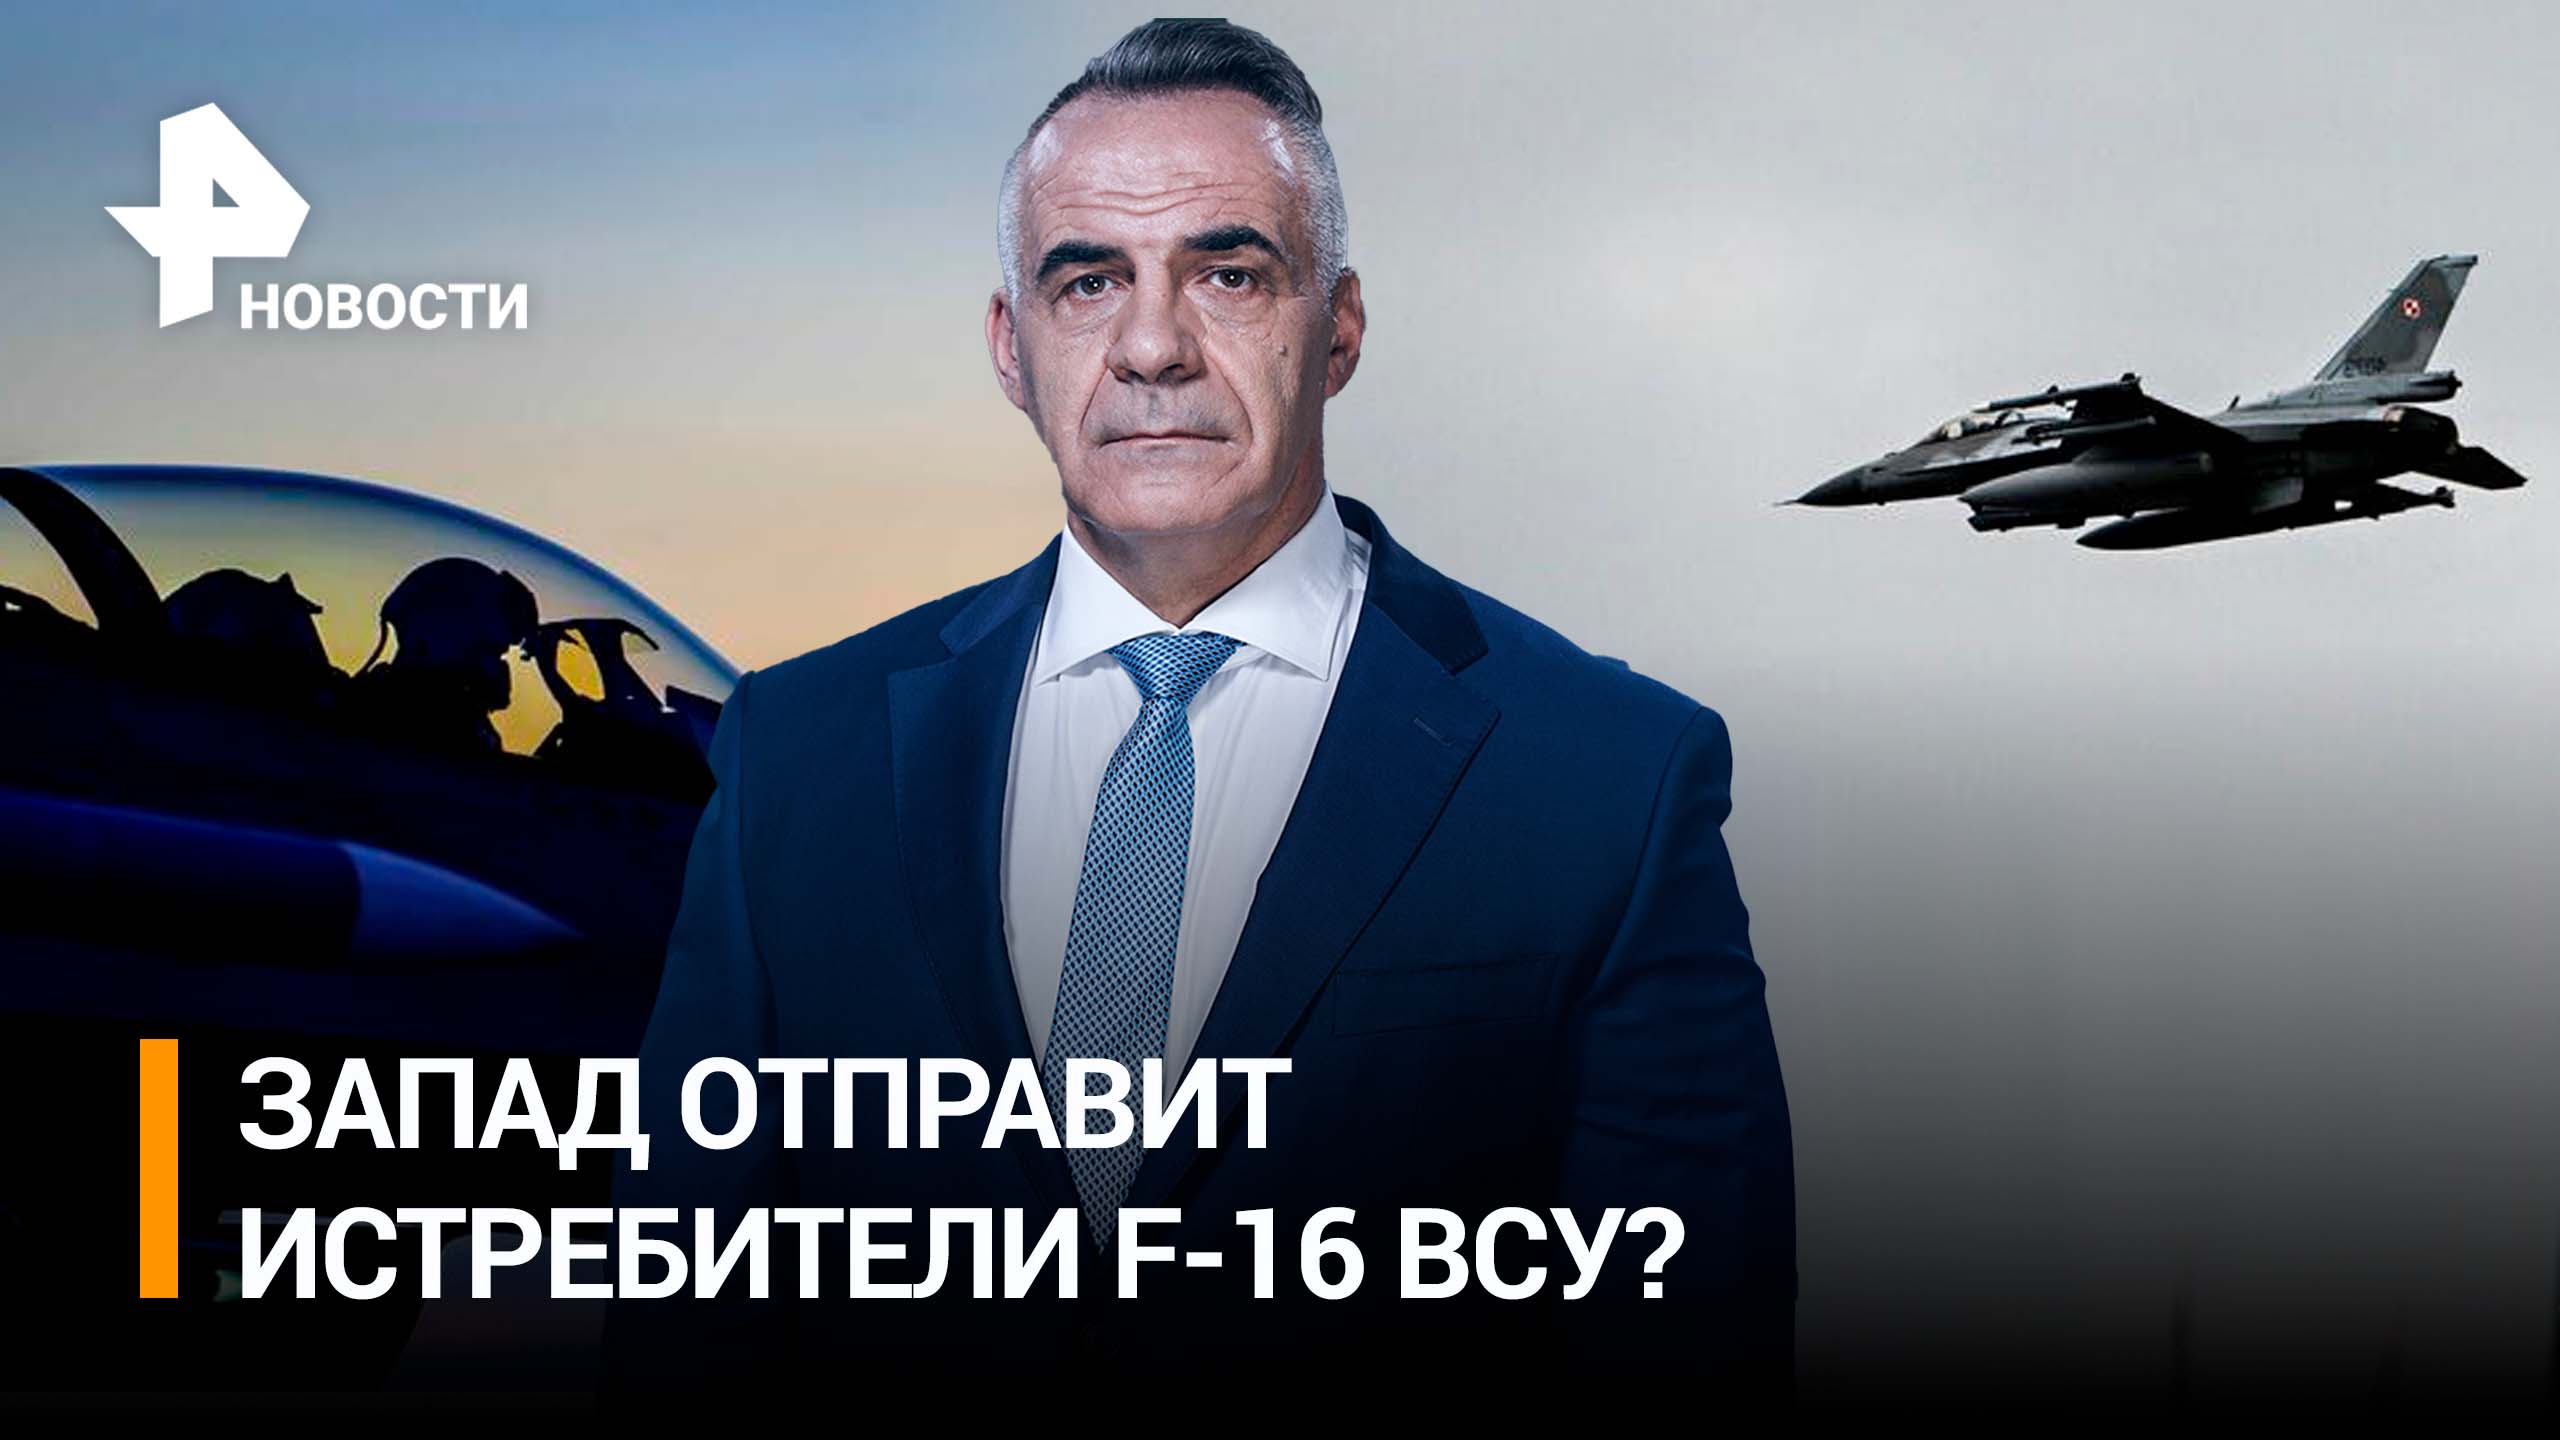 "Истребительная коалиция": передаст ли Запад Украине самолеты F-16? / ИТОГИ с Петром Марченко